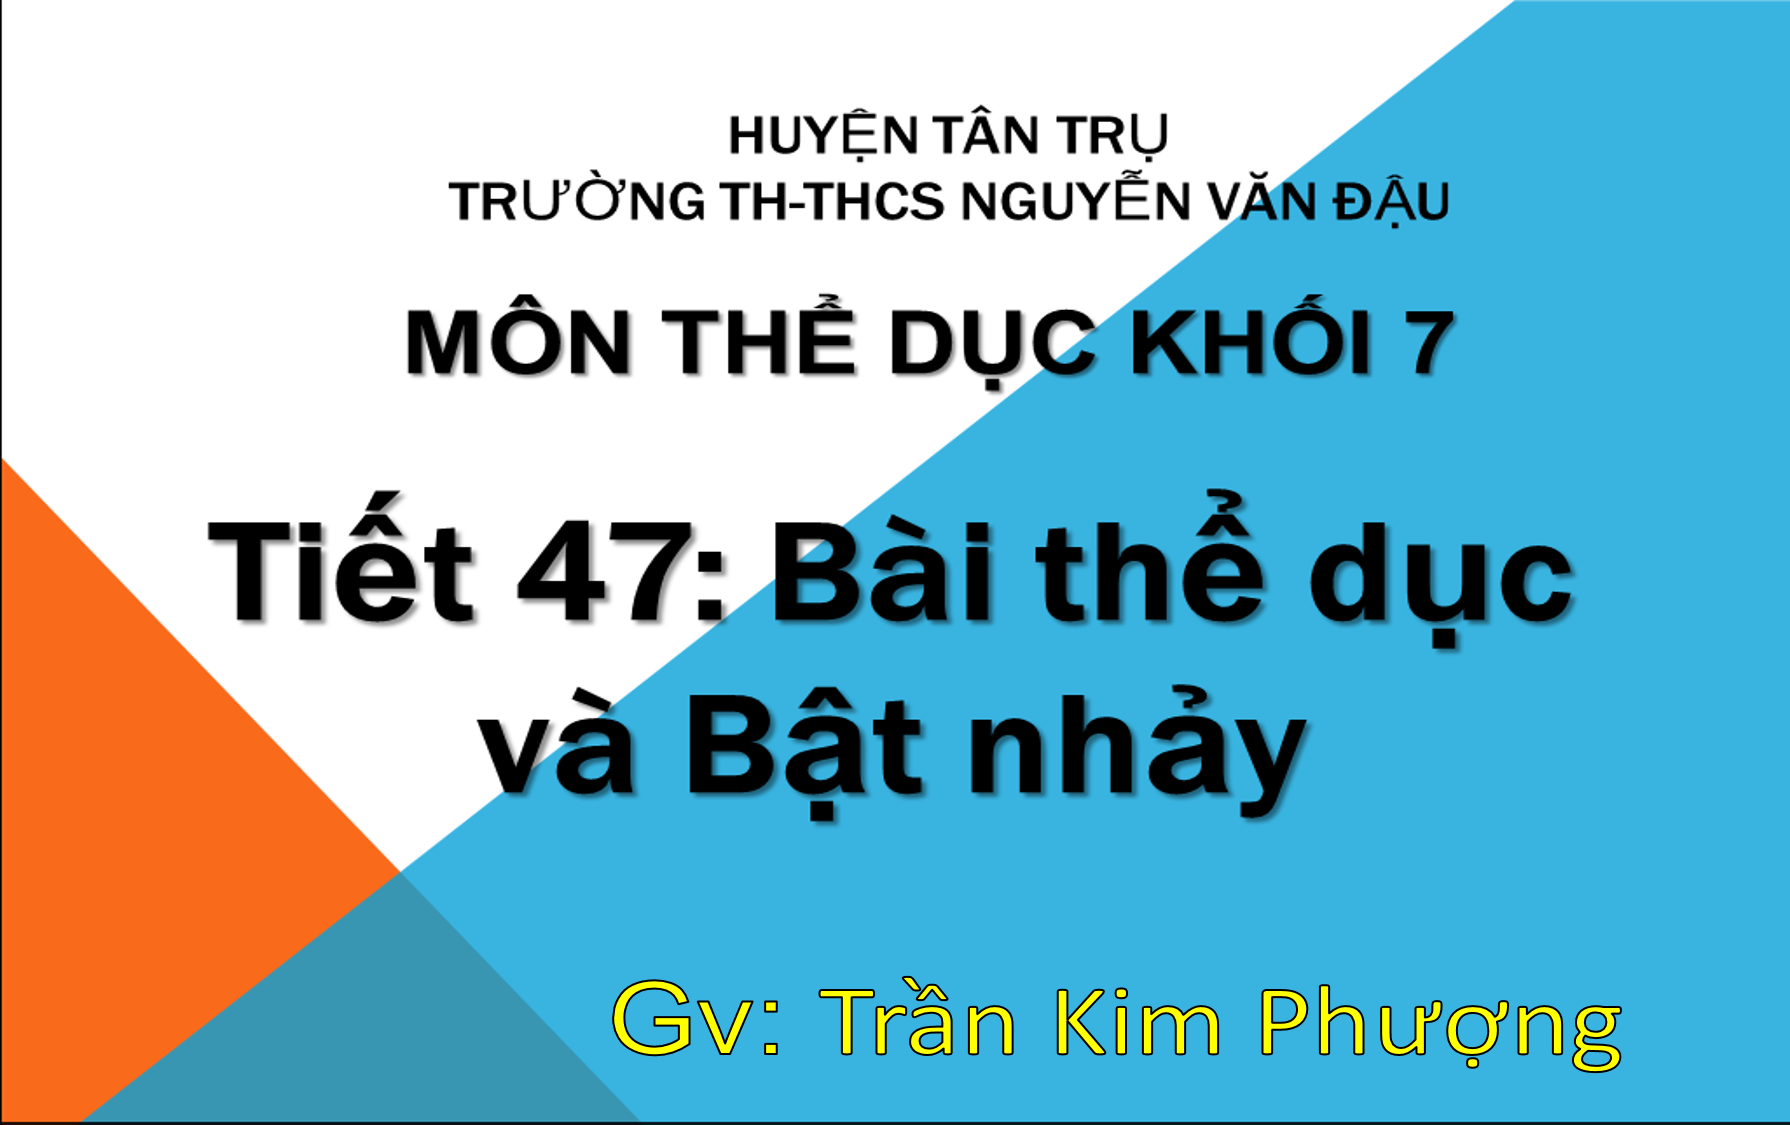 Bài thể dục và bật nhảy_THE DUC 7_Trường TH&THCS Nguyễn Văn Đậu_huyện Tân Trụ